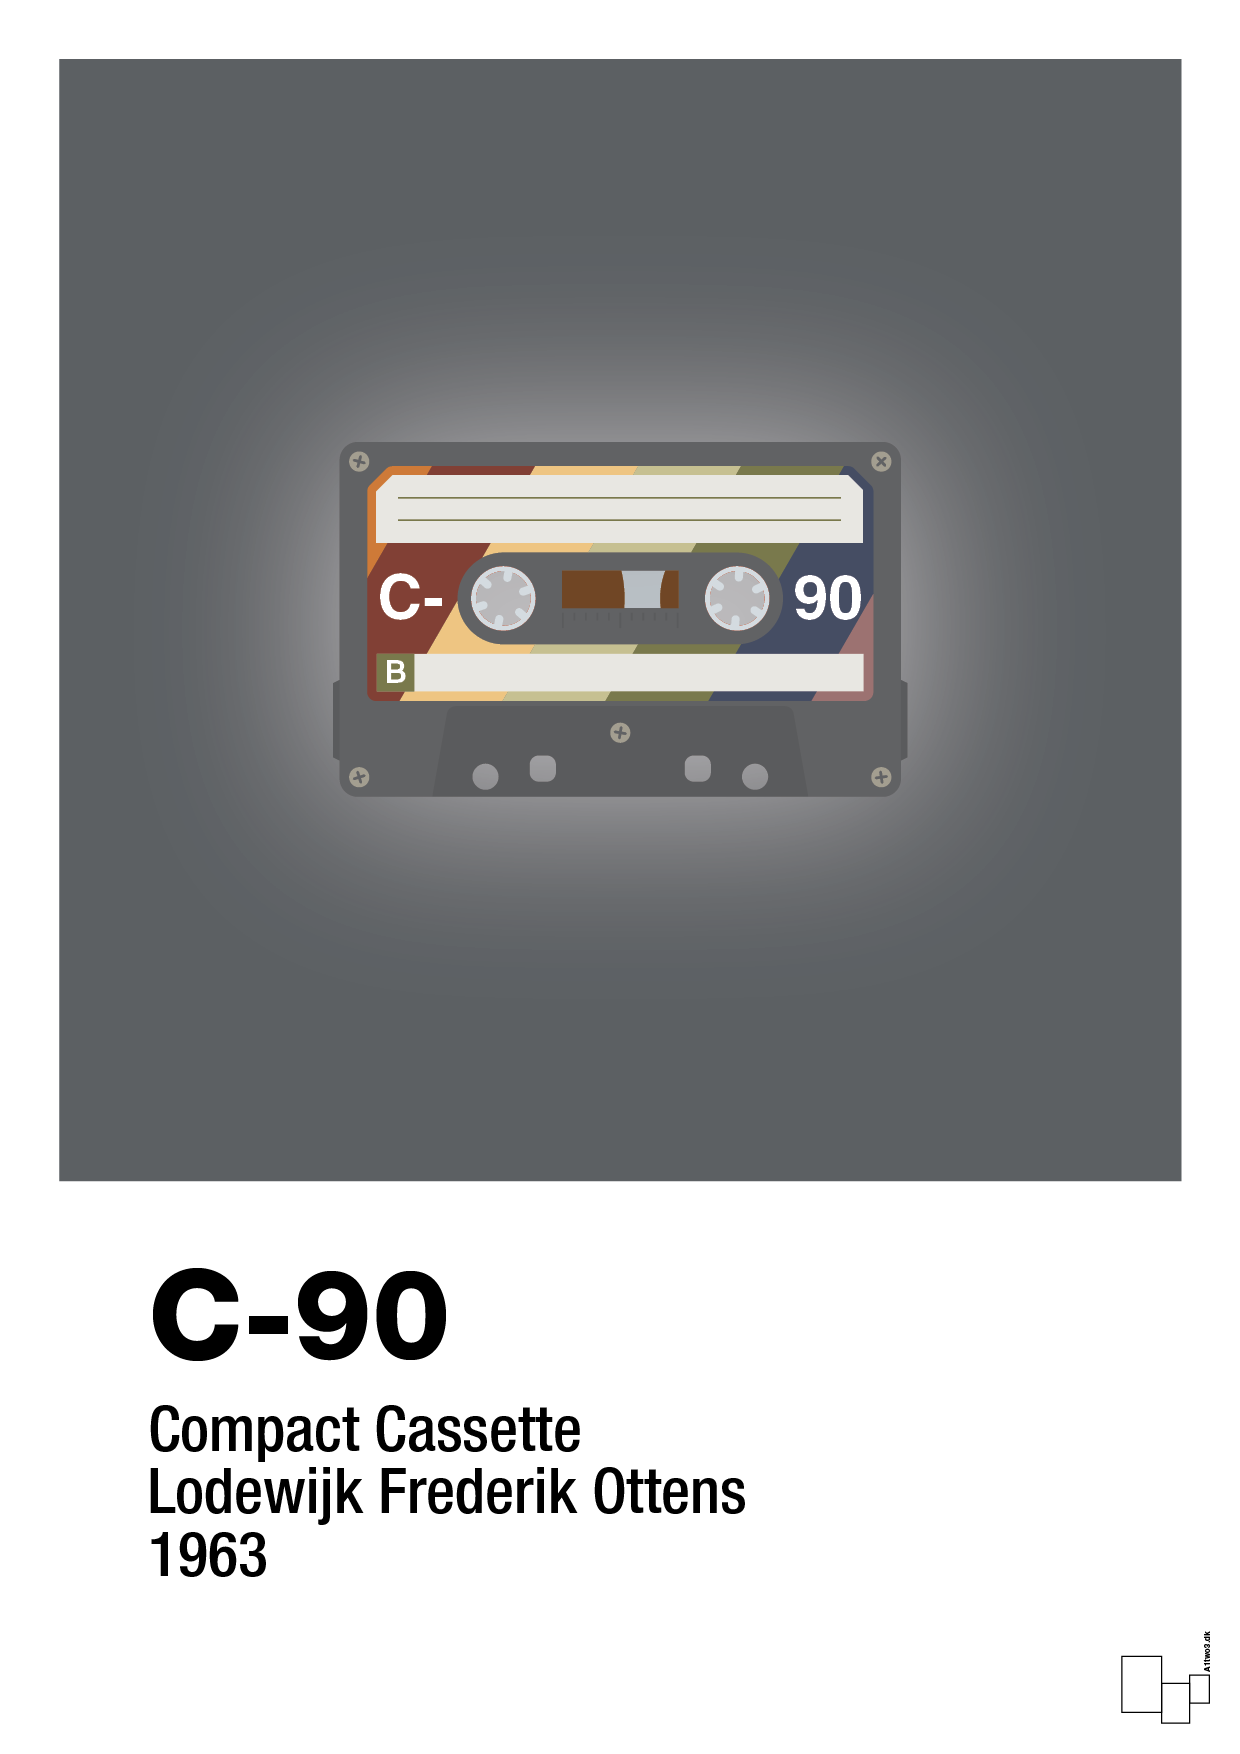 kassettebånd c-90 - Plakat med Grafik i Graphic Charcoal